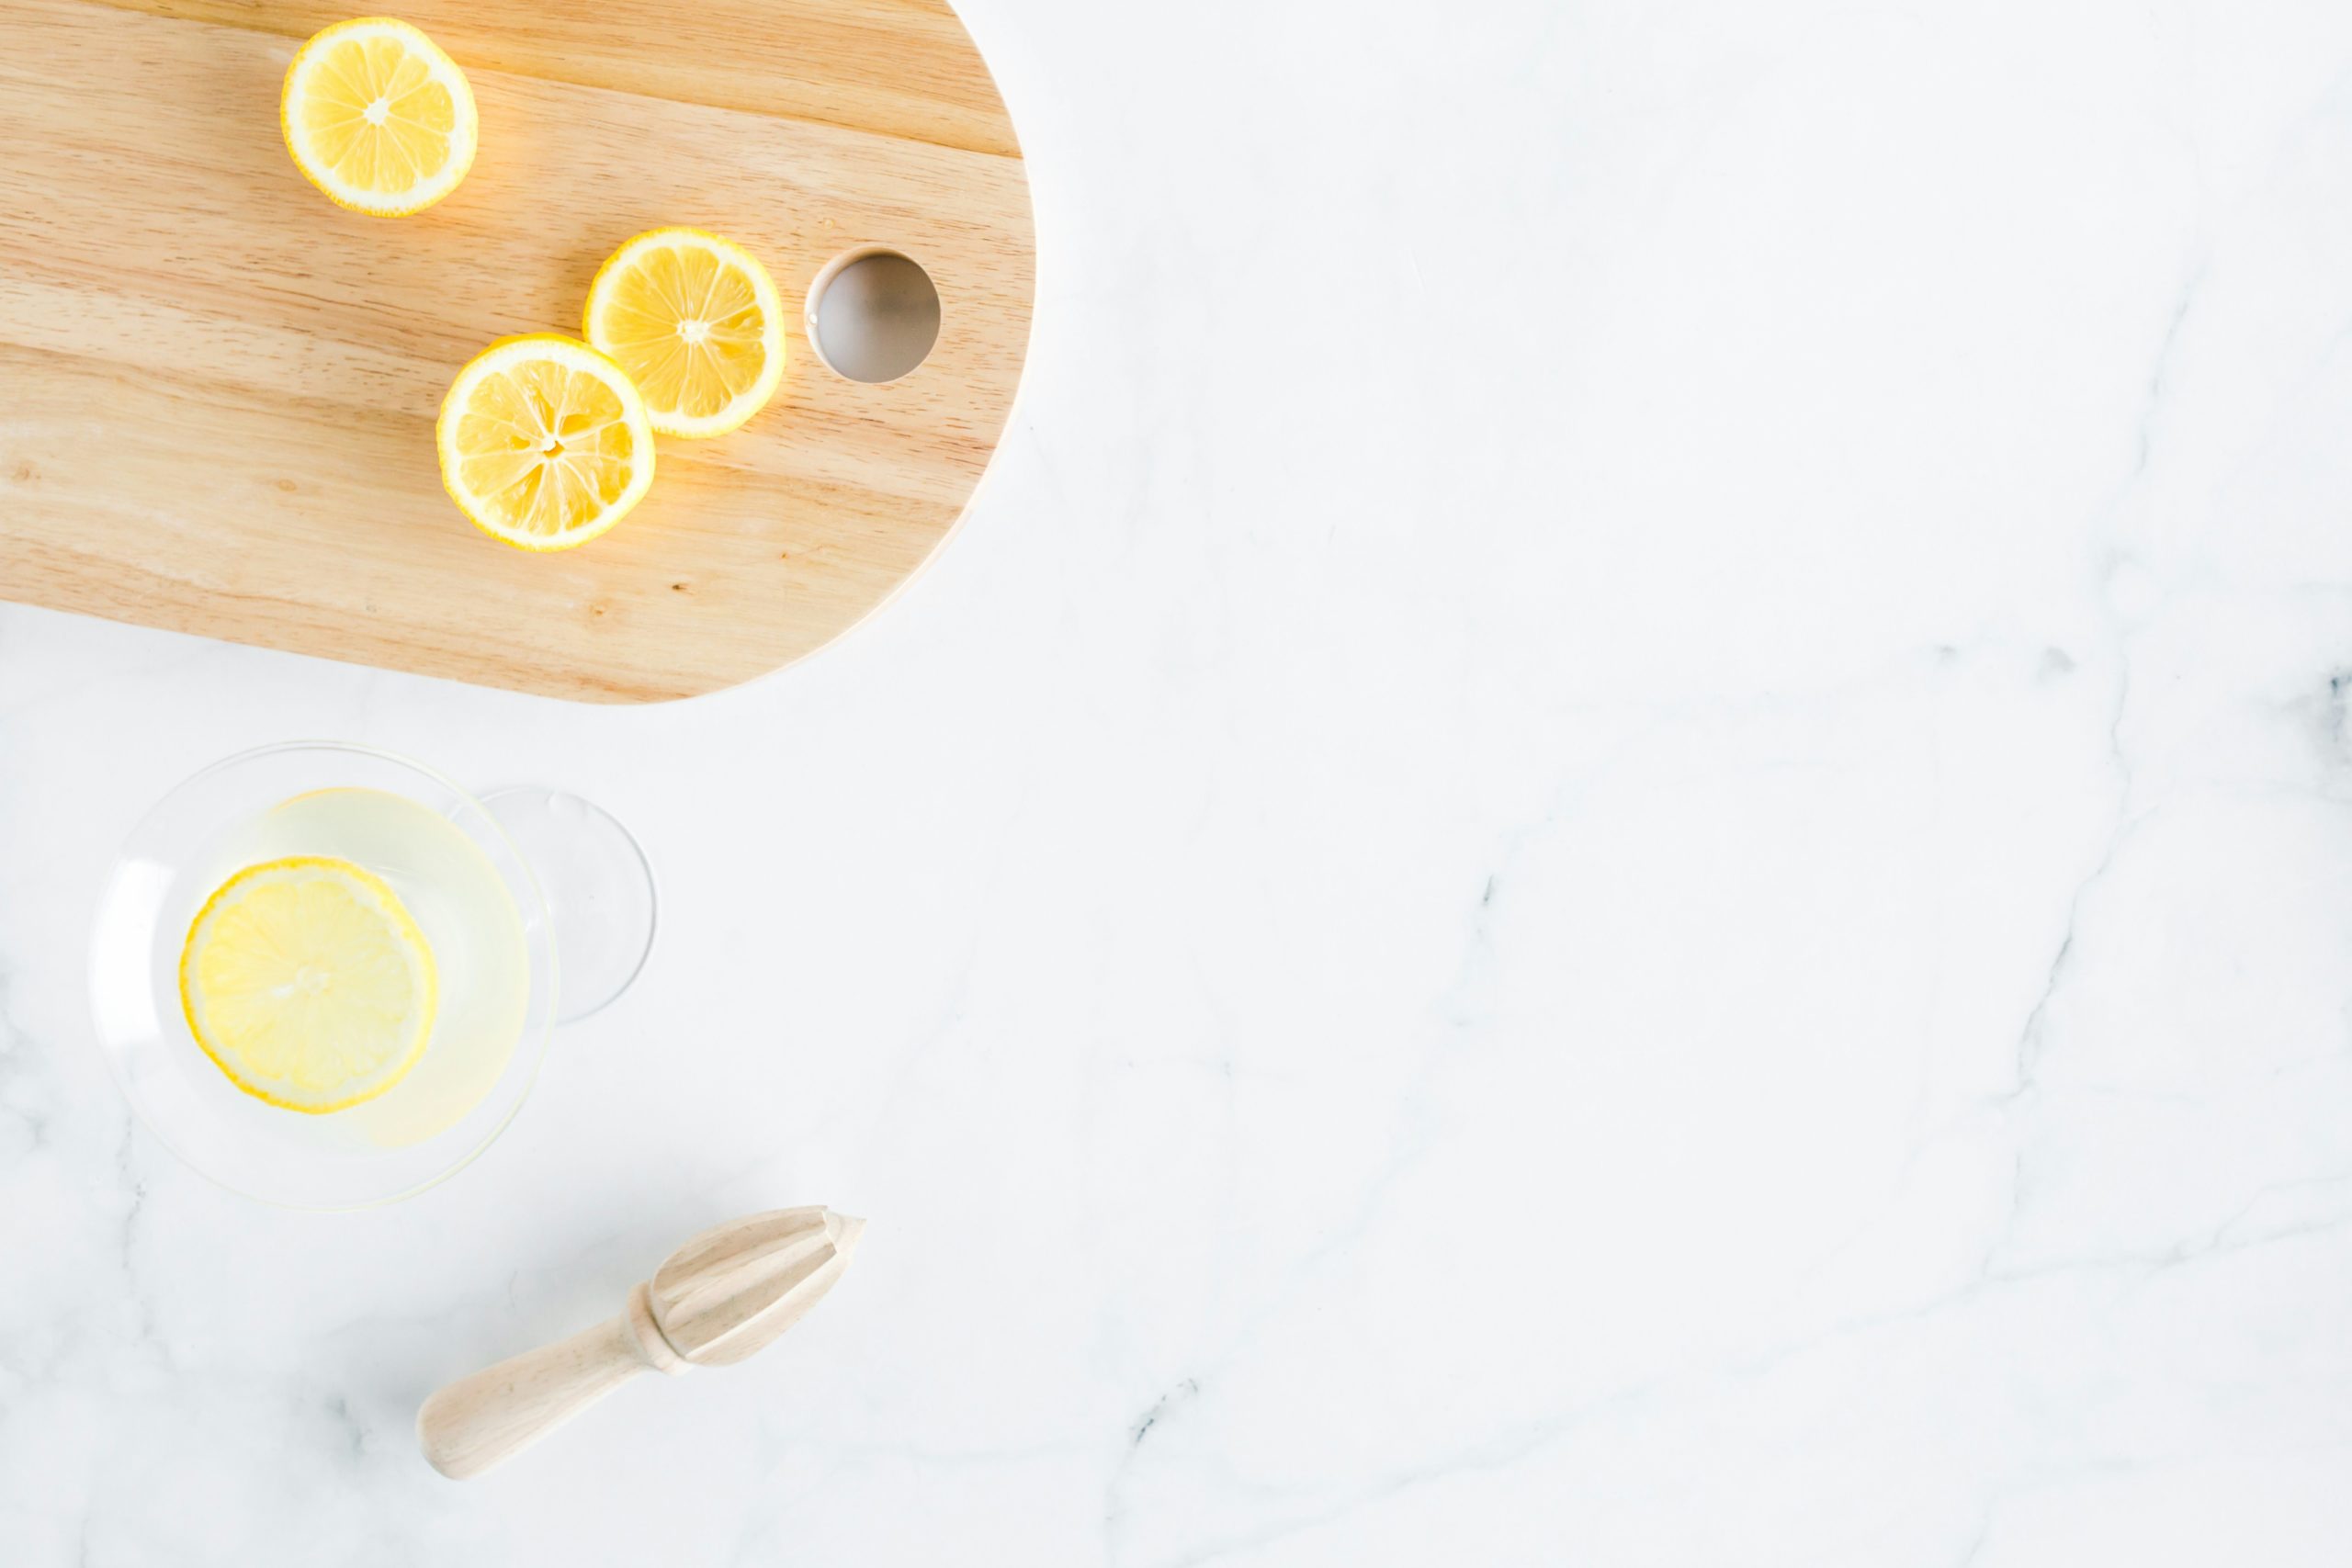 Μην πετάτε τα χρησιμοποιημένα λεμόνια – Πώς μπορείτε να τα χρησιμοποιήσετε στον καθαρισμό του σπιτιού